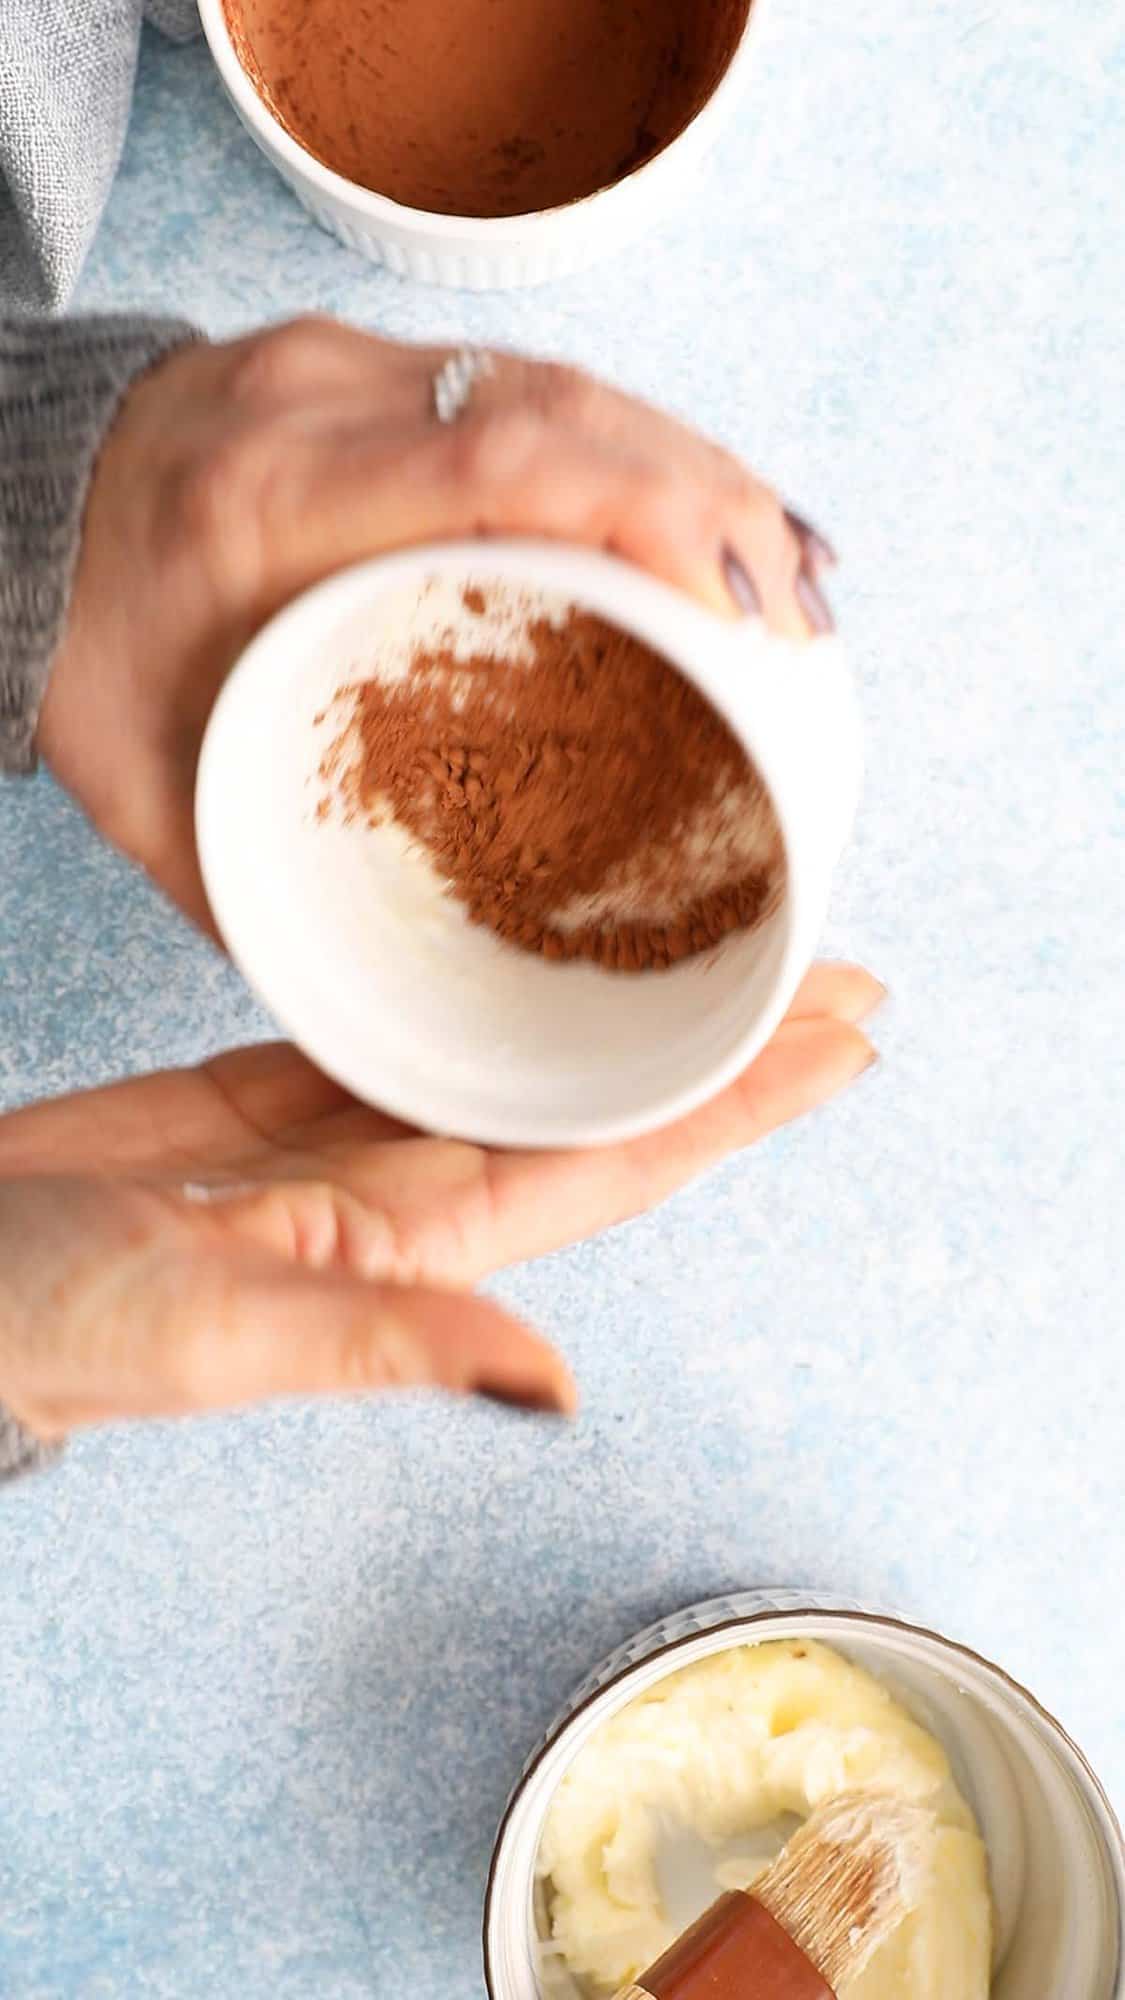 two hands dusting cocoa powder inside a ramekin.